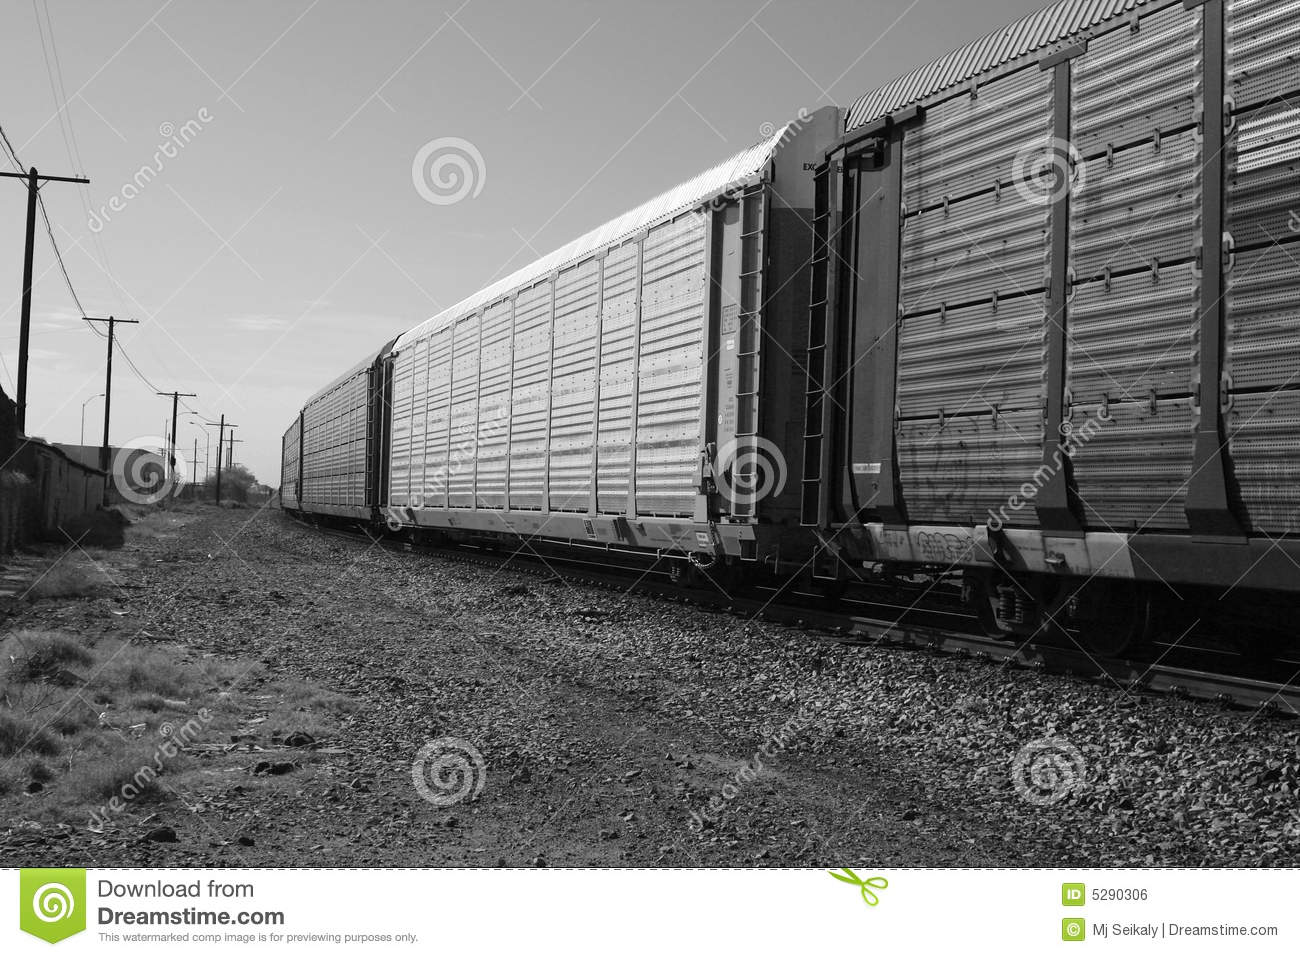 Cargo Train Royalty Free Stock Image   Image  5290306